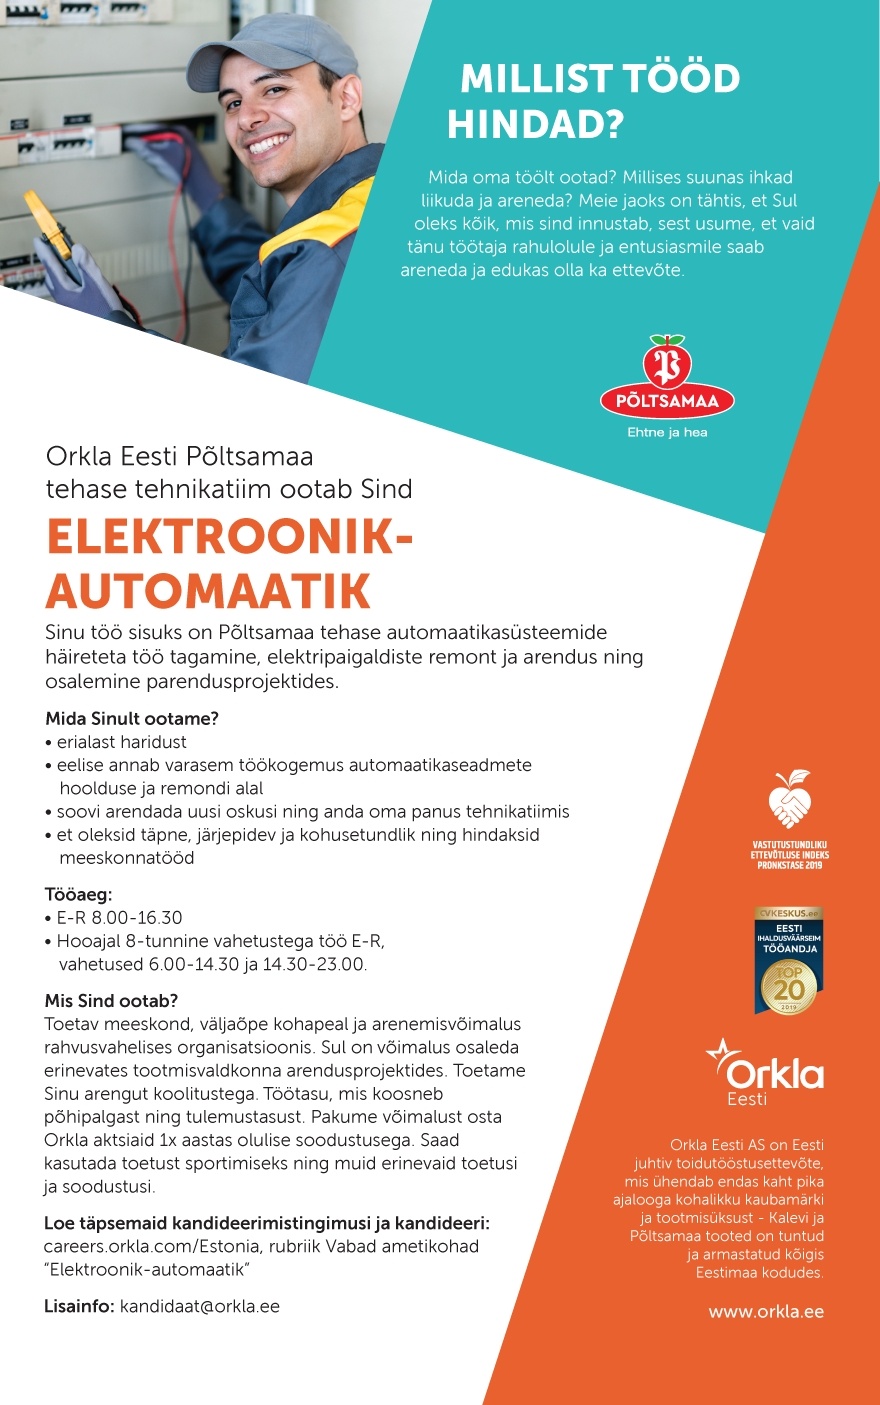 Orkla Eesti AS (Kalev ja Põltsamaa Felix) Elektroonik-automaatik